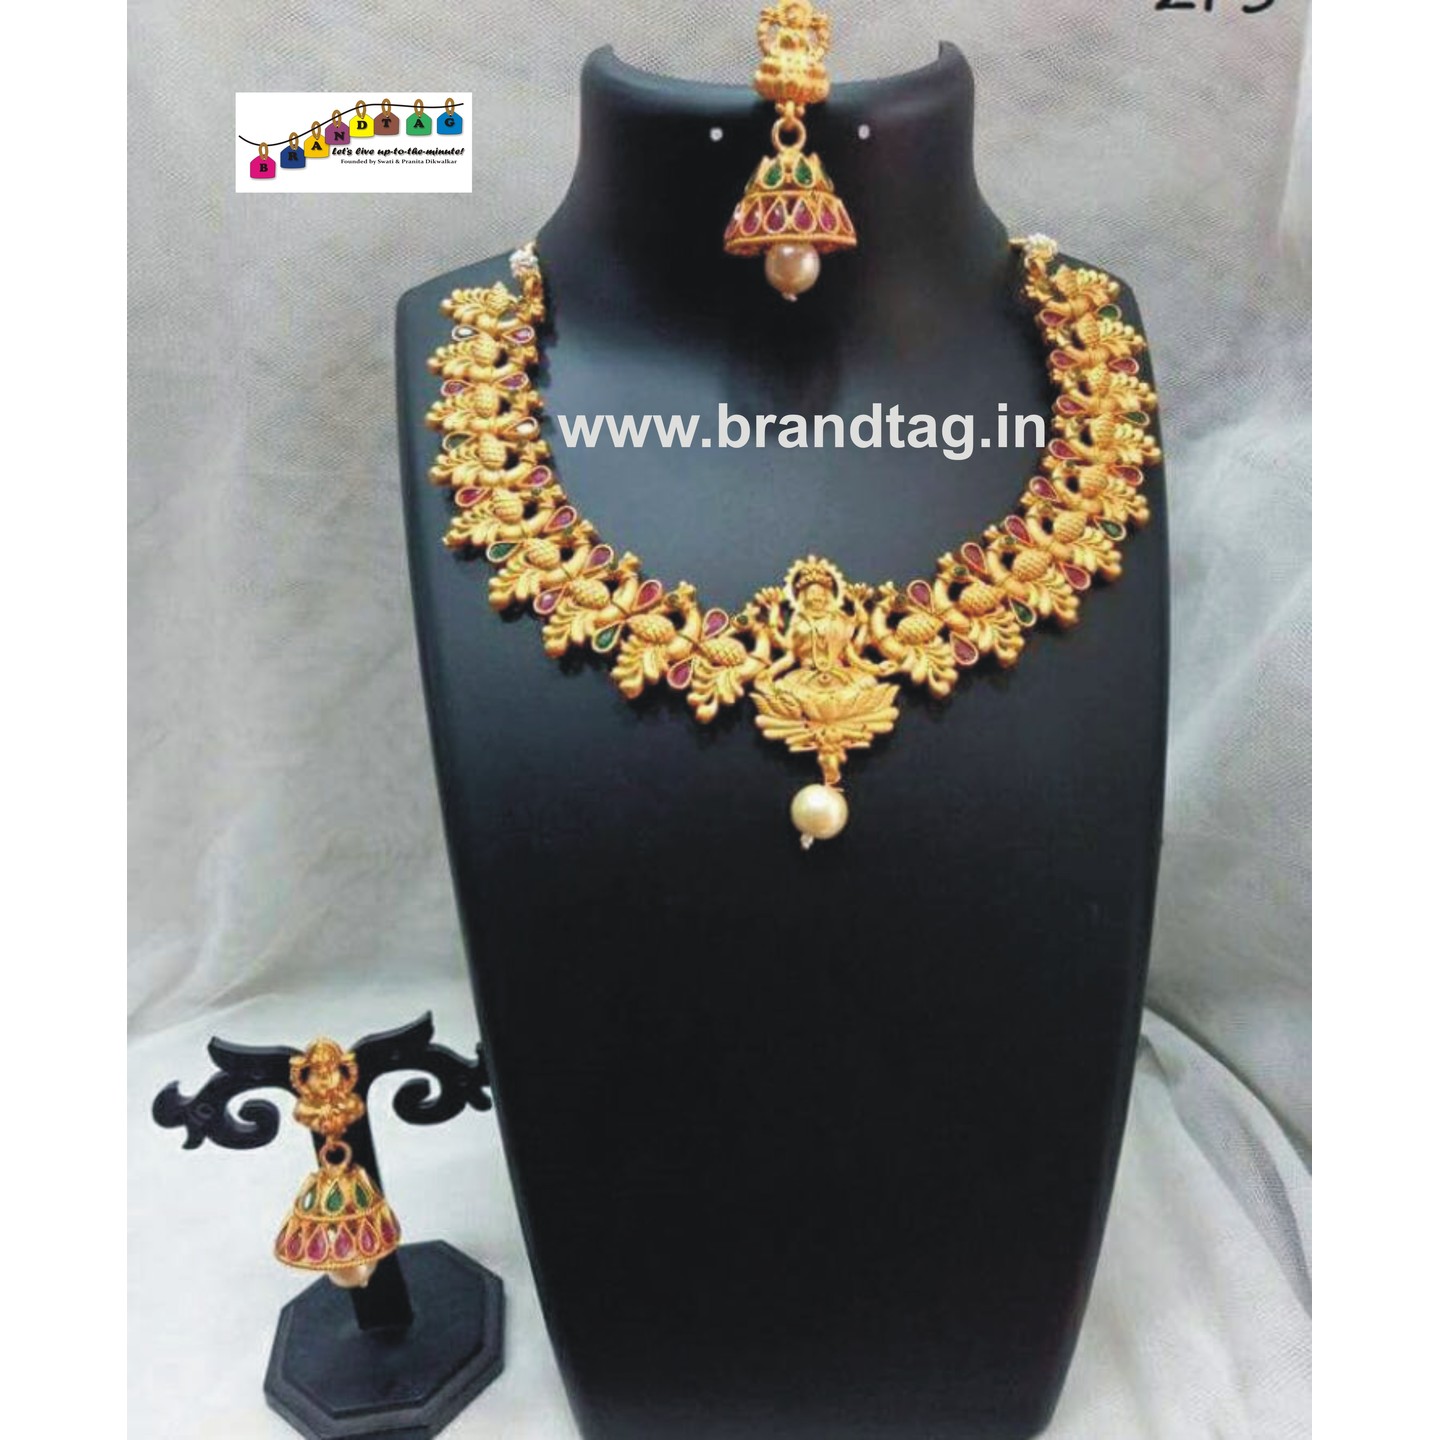 Exquisite Golden Temple Necklace set!